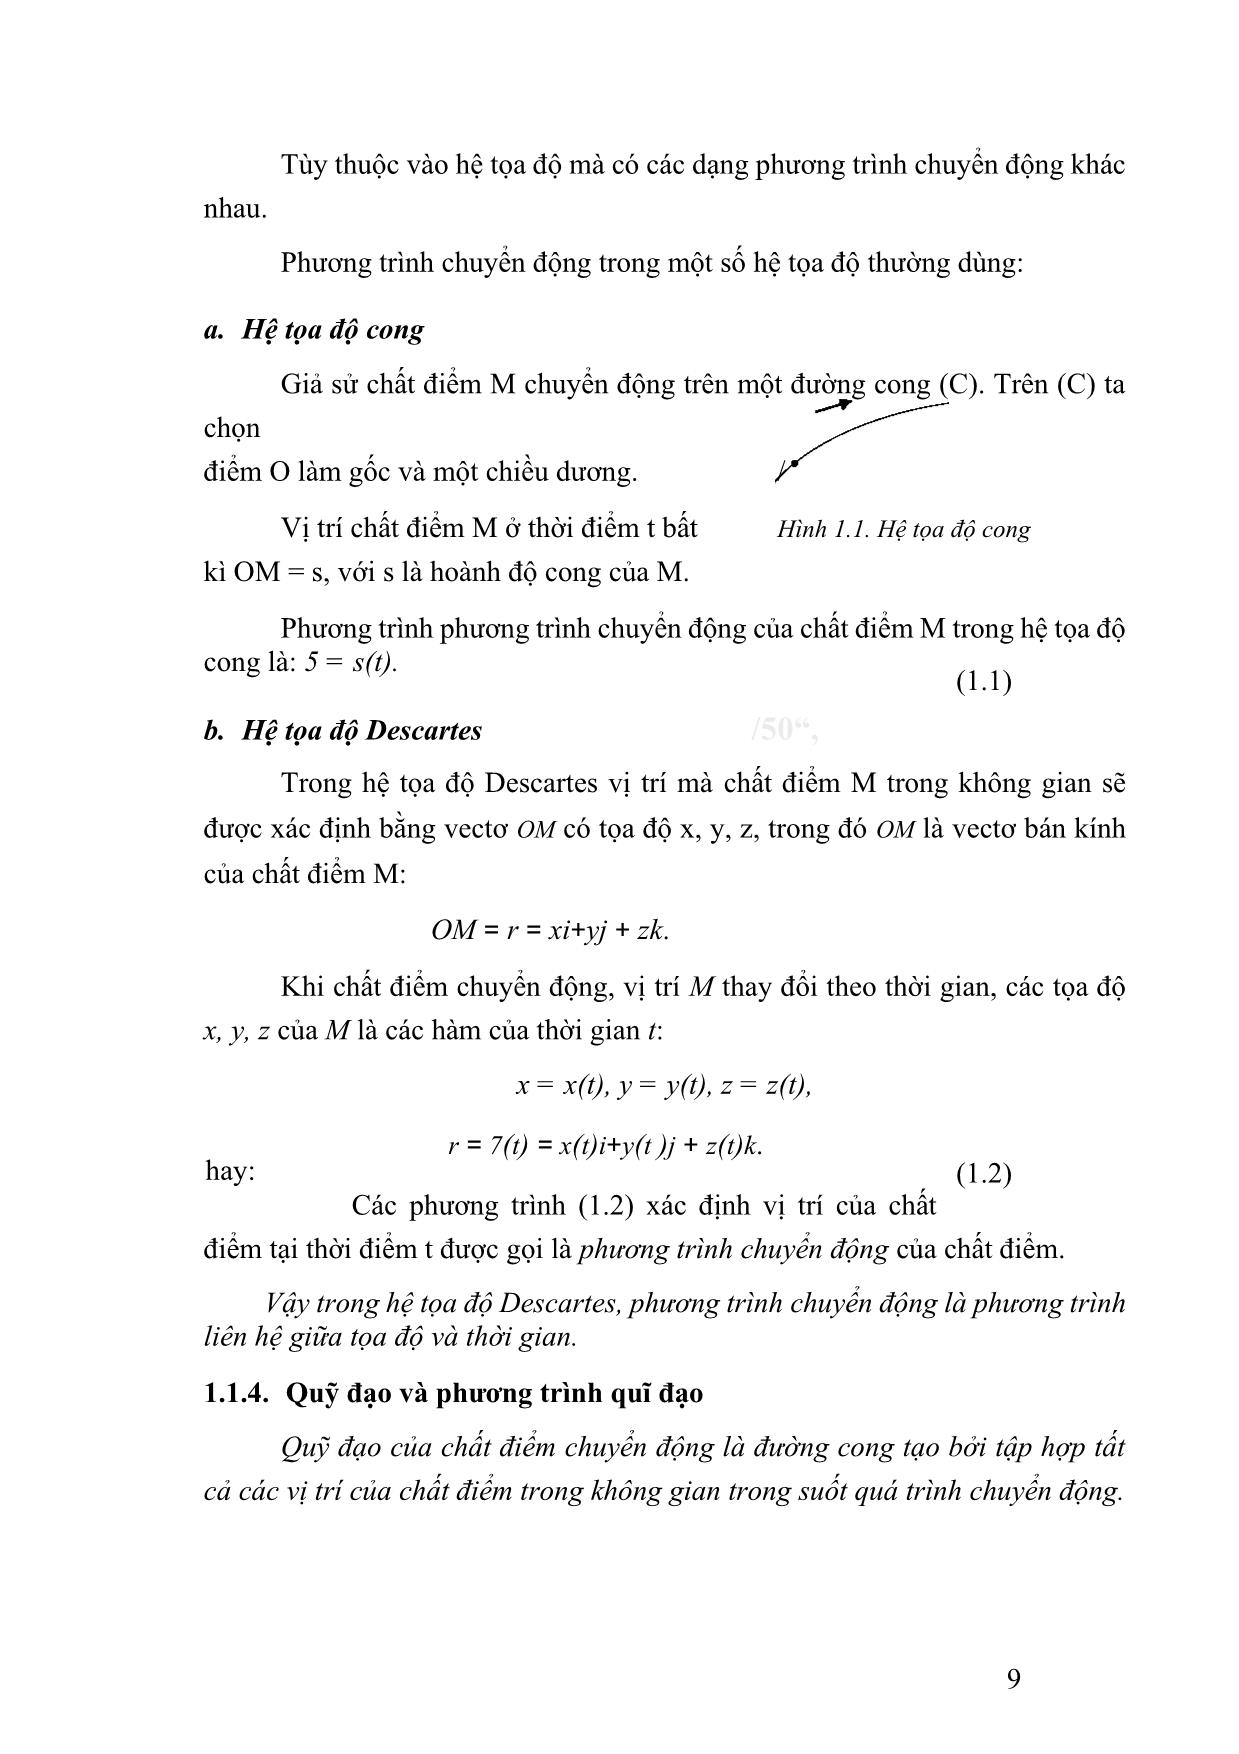 Giáo trình Vật lý đại cương 1 (Phần 1) trang 9